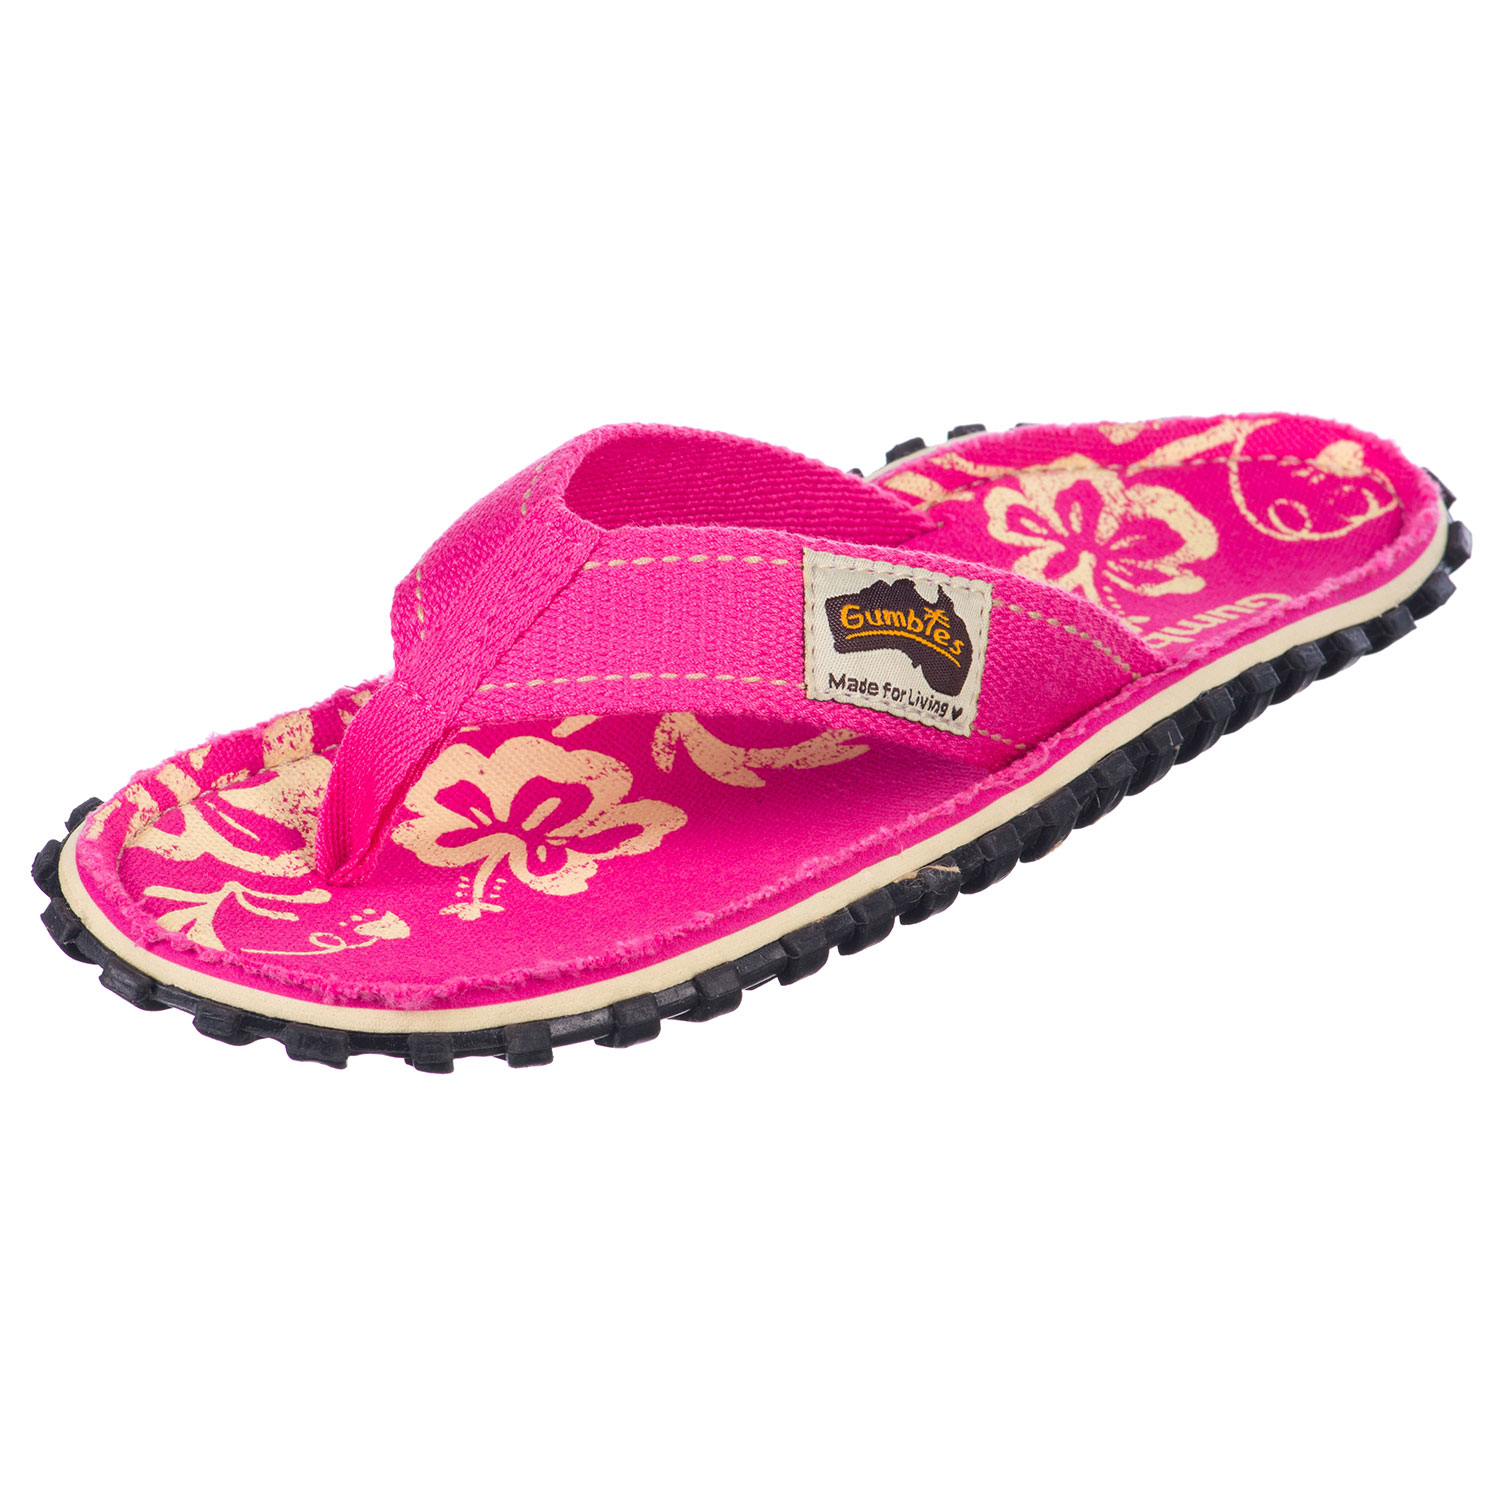 Gumbies Australian Shoes, pink hibiscus